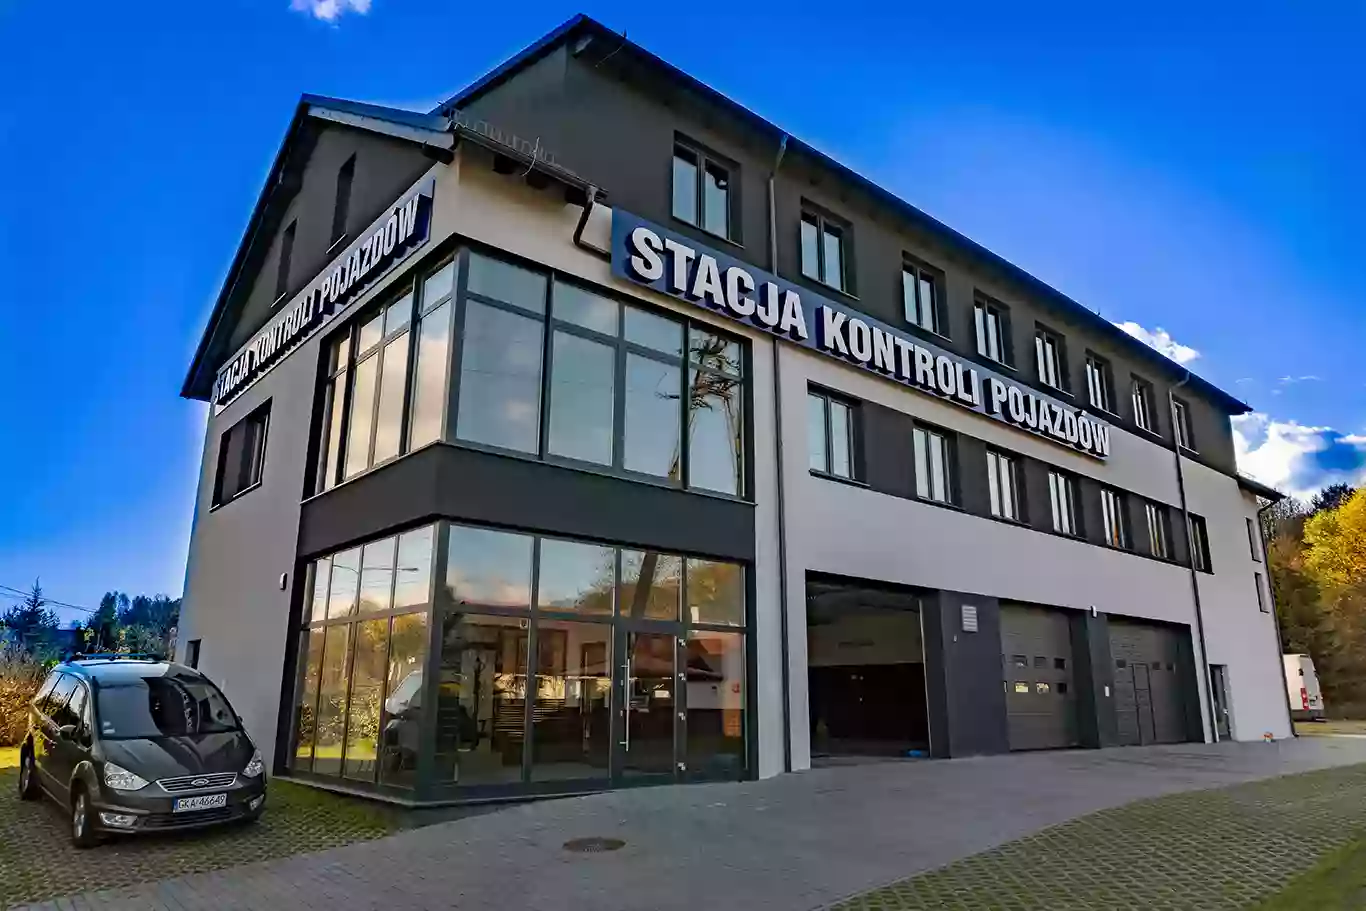 Stacja Kontroli Pojazdów "Europak" Gdańsk Brętowo